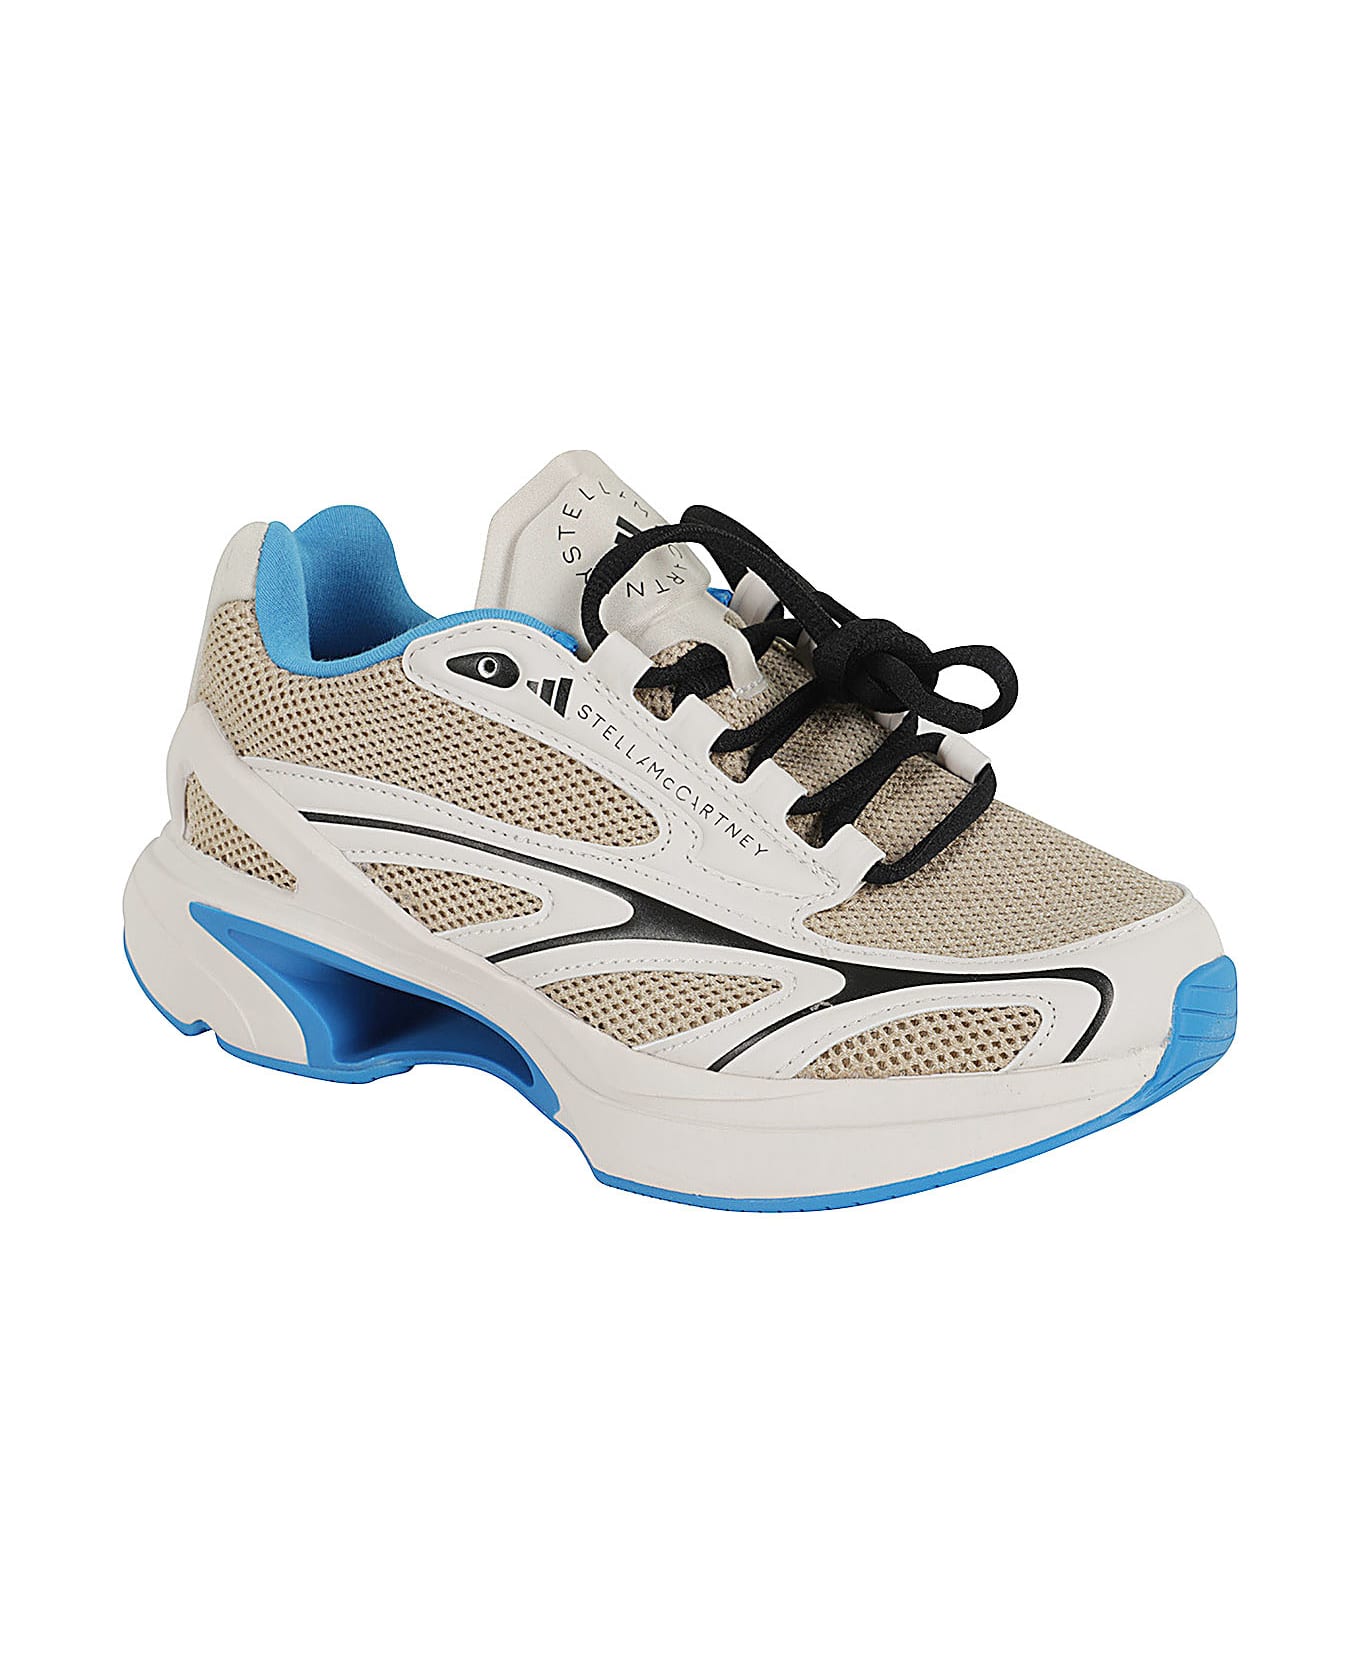 Adidas by Stella McCartney 2000trak - Grey Blue スニーカー